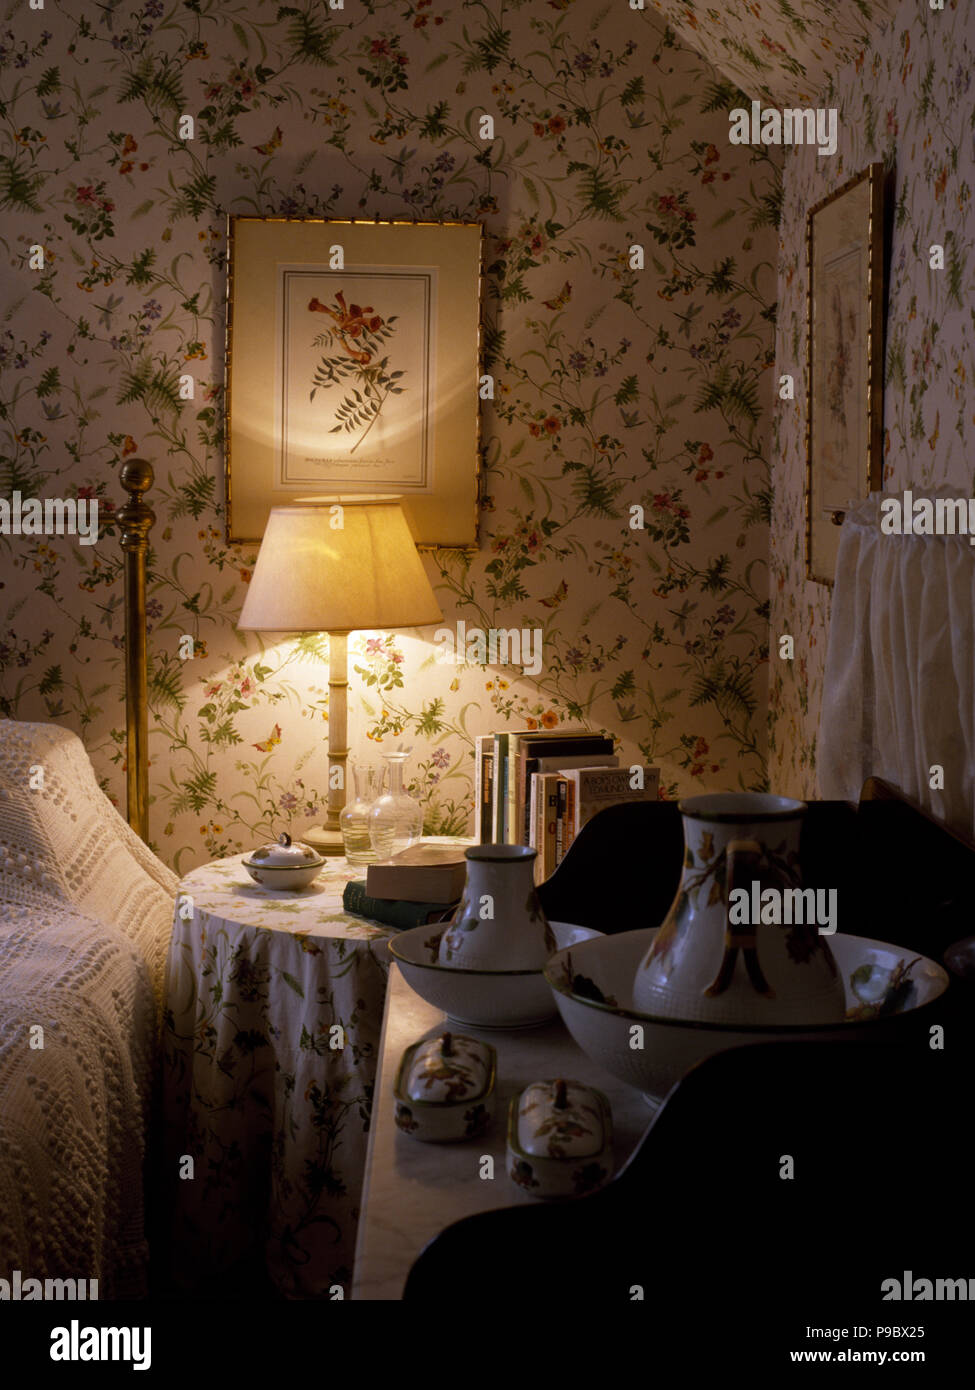 Lampada accesa sul comodino in stile vittoriano, camera da letto con carta da parati floreale Foto Stock